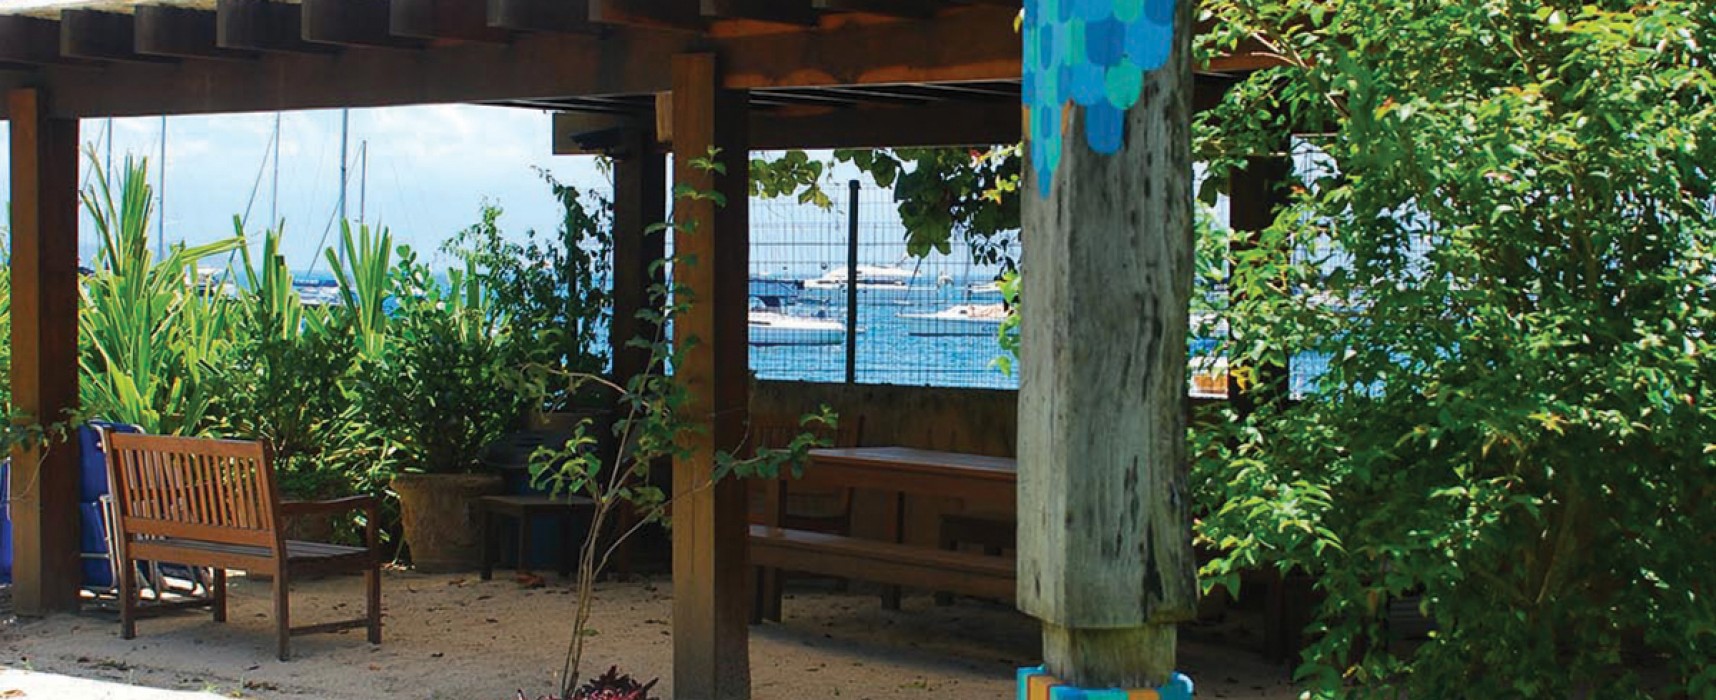 Em parceria com a Plantae Jardins, o artista plástico Humberto Vianna Machado cria totem multicolorido para um jardim em Ilhabela